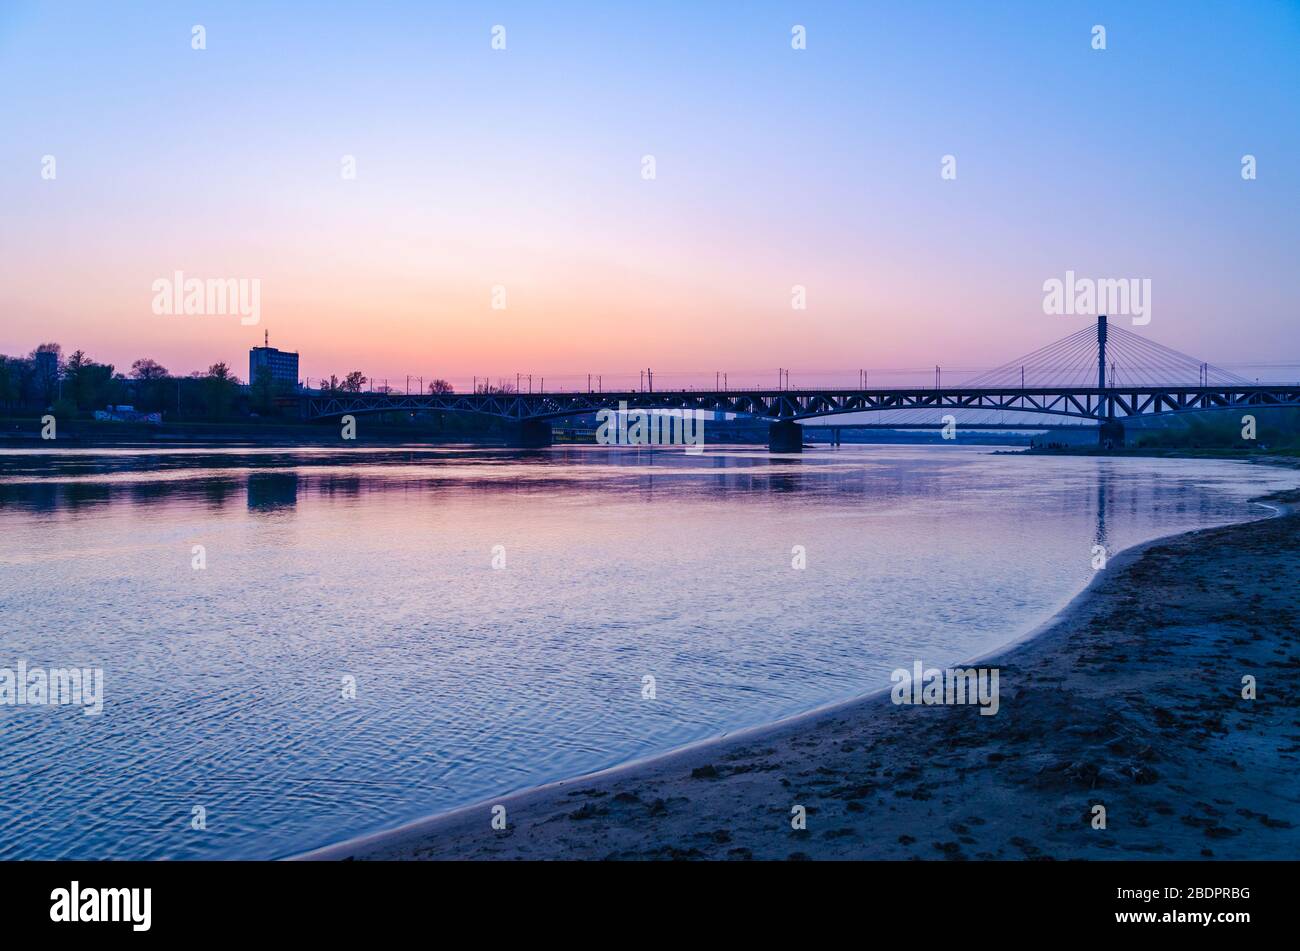 The Wisla River and the Świetokrzyski Bridge in Warsaw in the evening Stock Photo